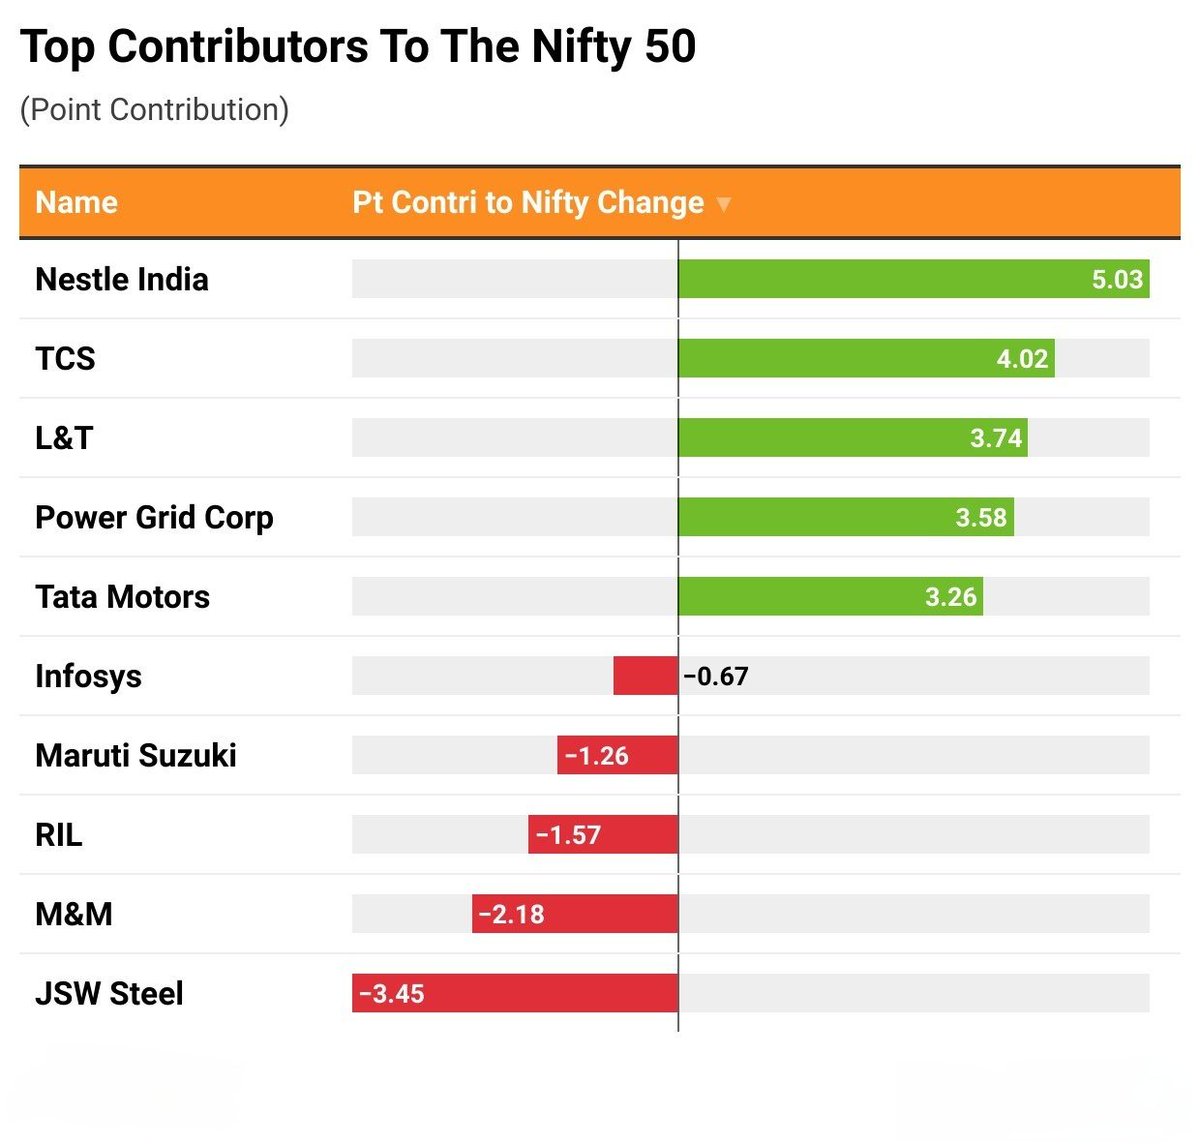 These are the top movers on #Nifty50. #stockmarkets #StockInNews #StockMarketindia #NestleIndia #tcs #PowerGrid #tatamotors
#Infosys #marutisuzuki #jsw